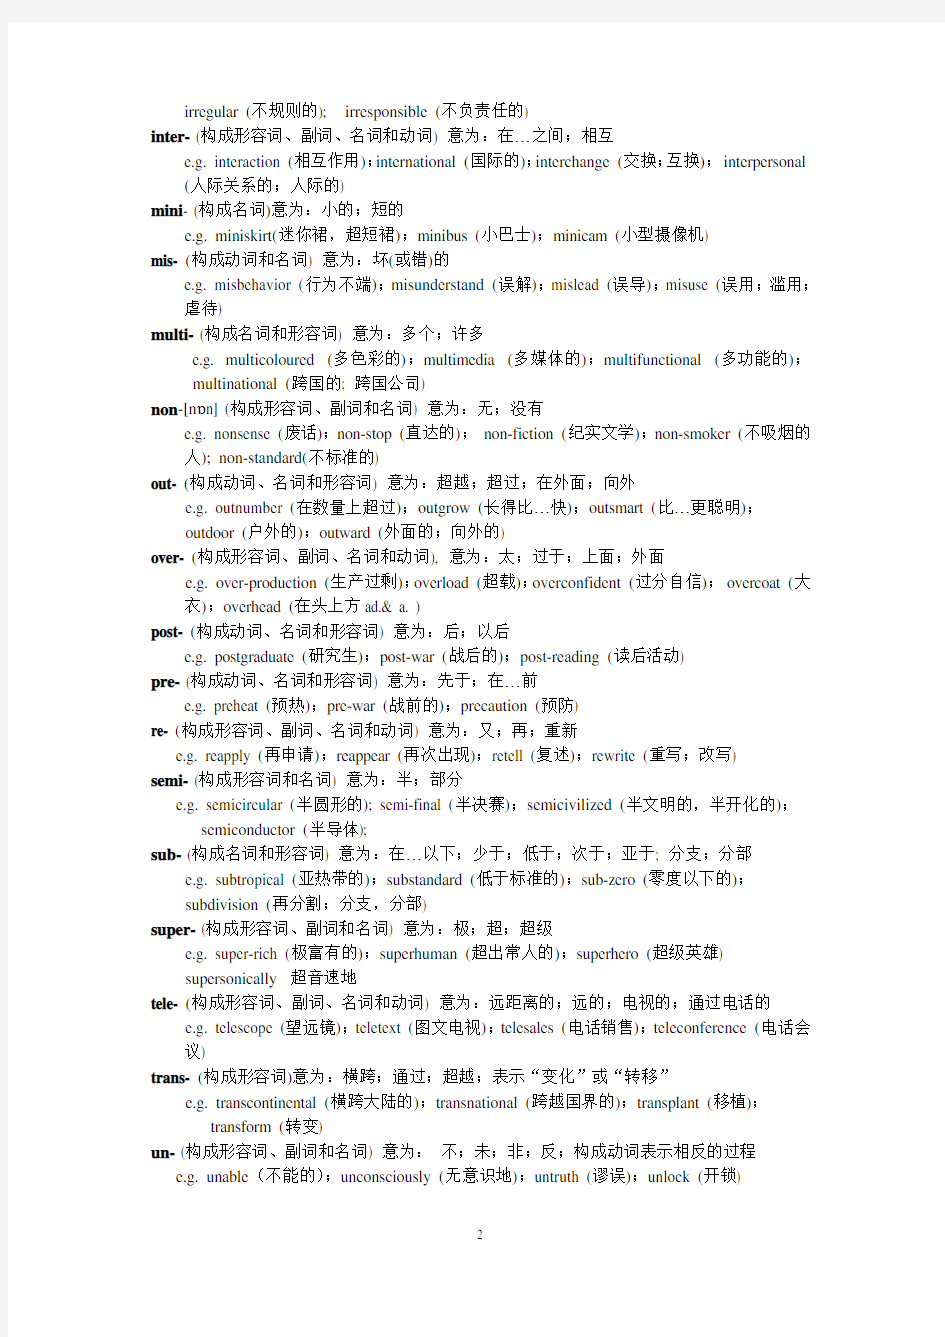 上海高考词汇手册附录常用前缀、后缀详解(上海教育考试院编写,2018年版)